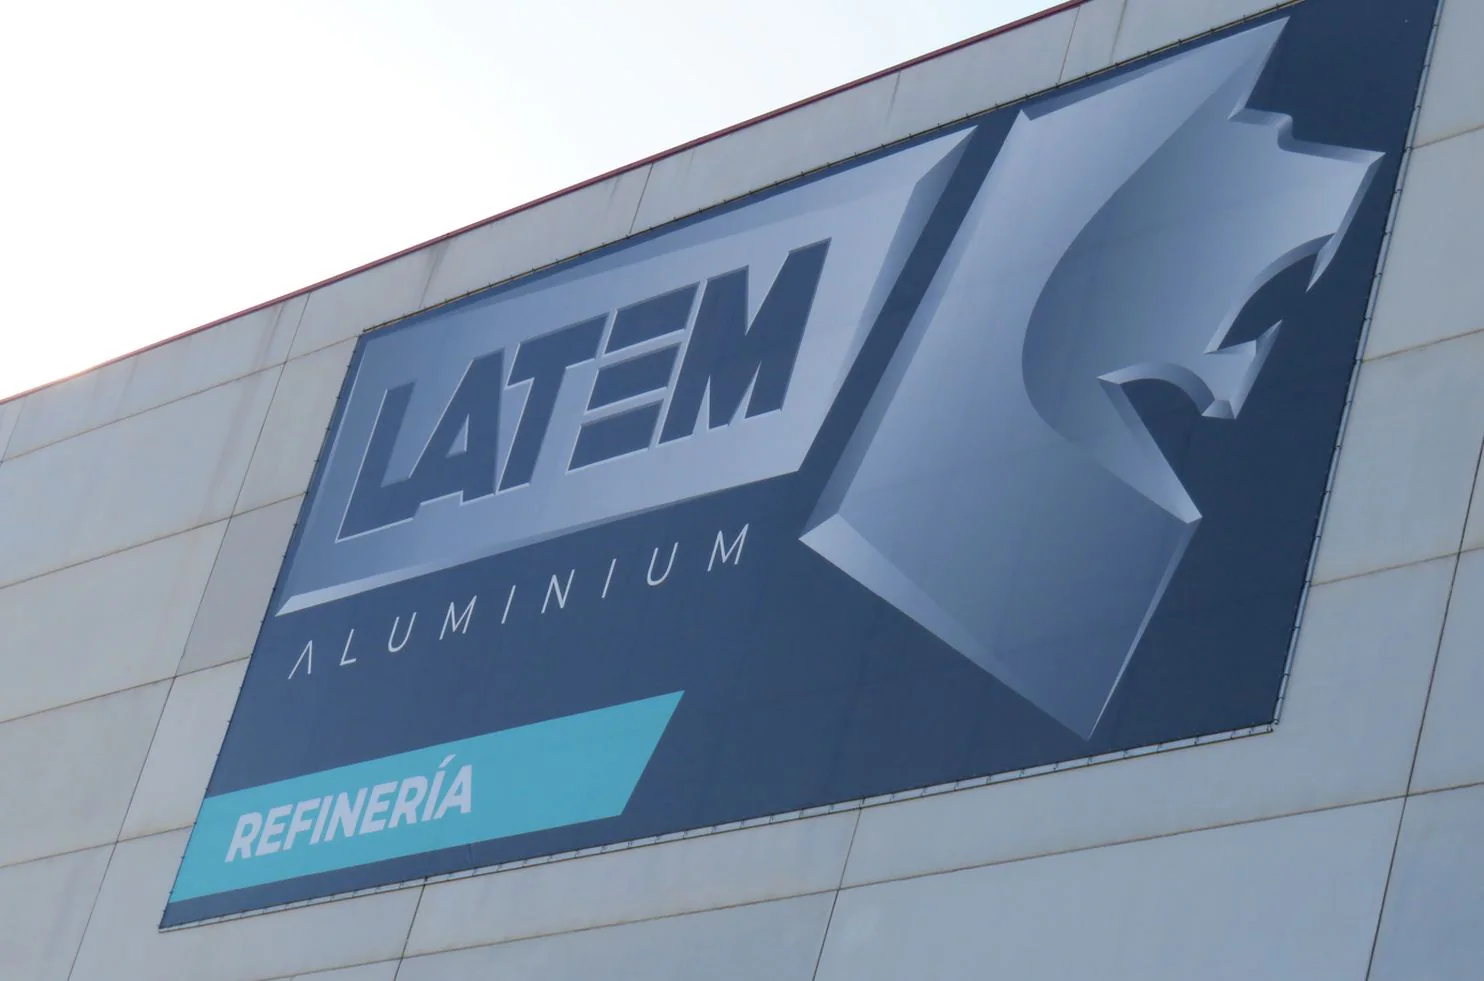 Latem Aluminium SA invierte diez millones de euros en el Polígono de Villadangos en una innovadora factoría que permitirá producir 30.000 toneladas anuales de aluminio secundario